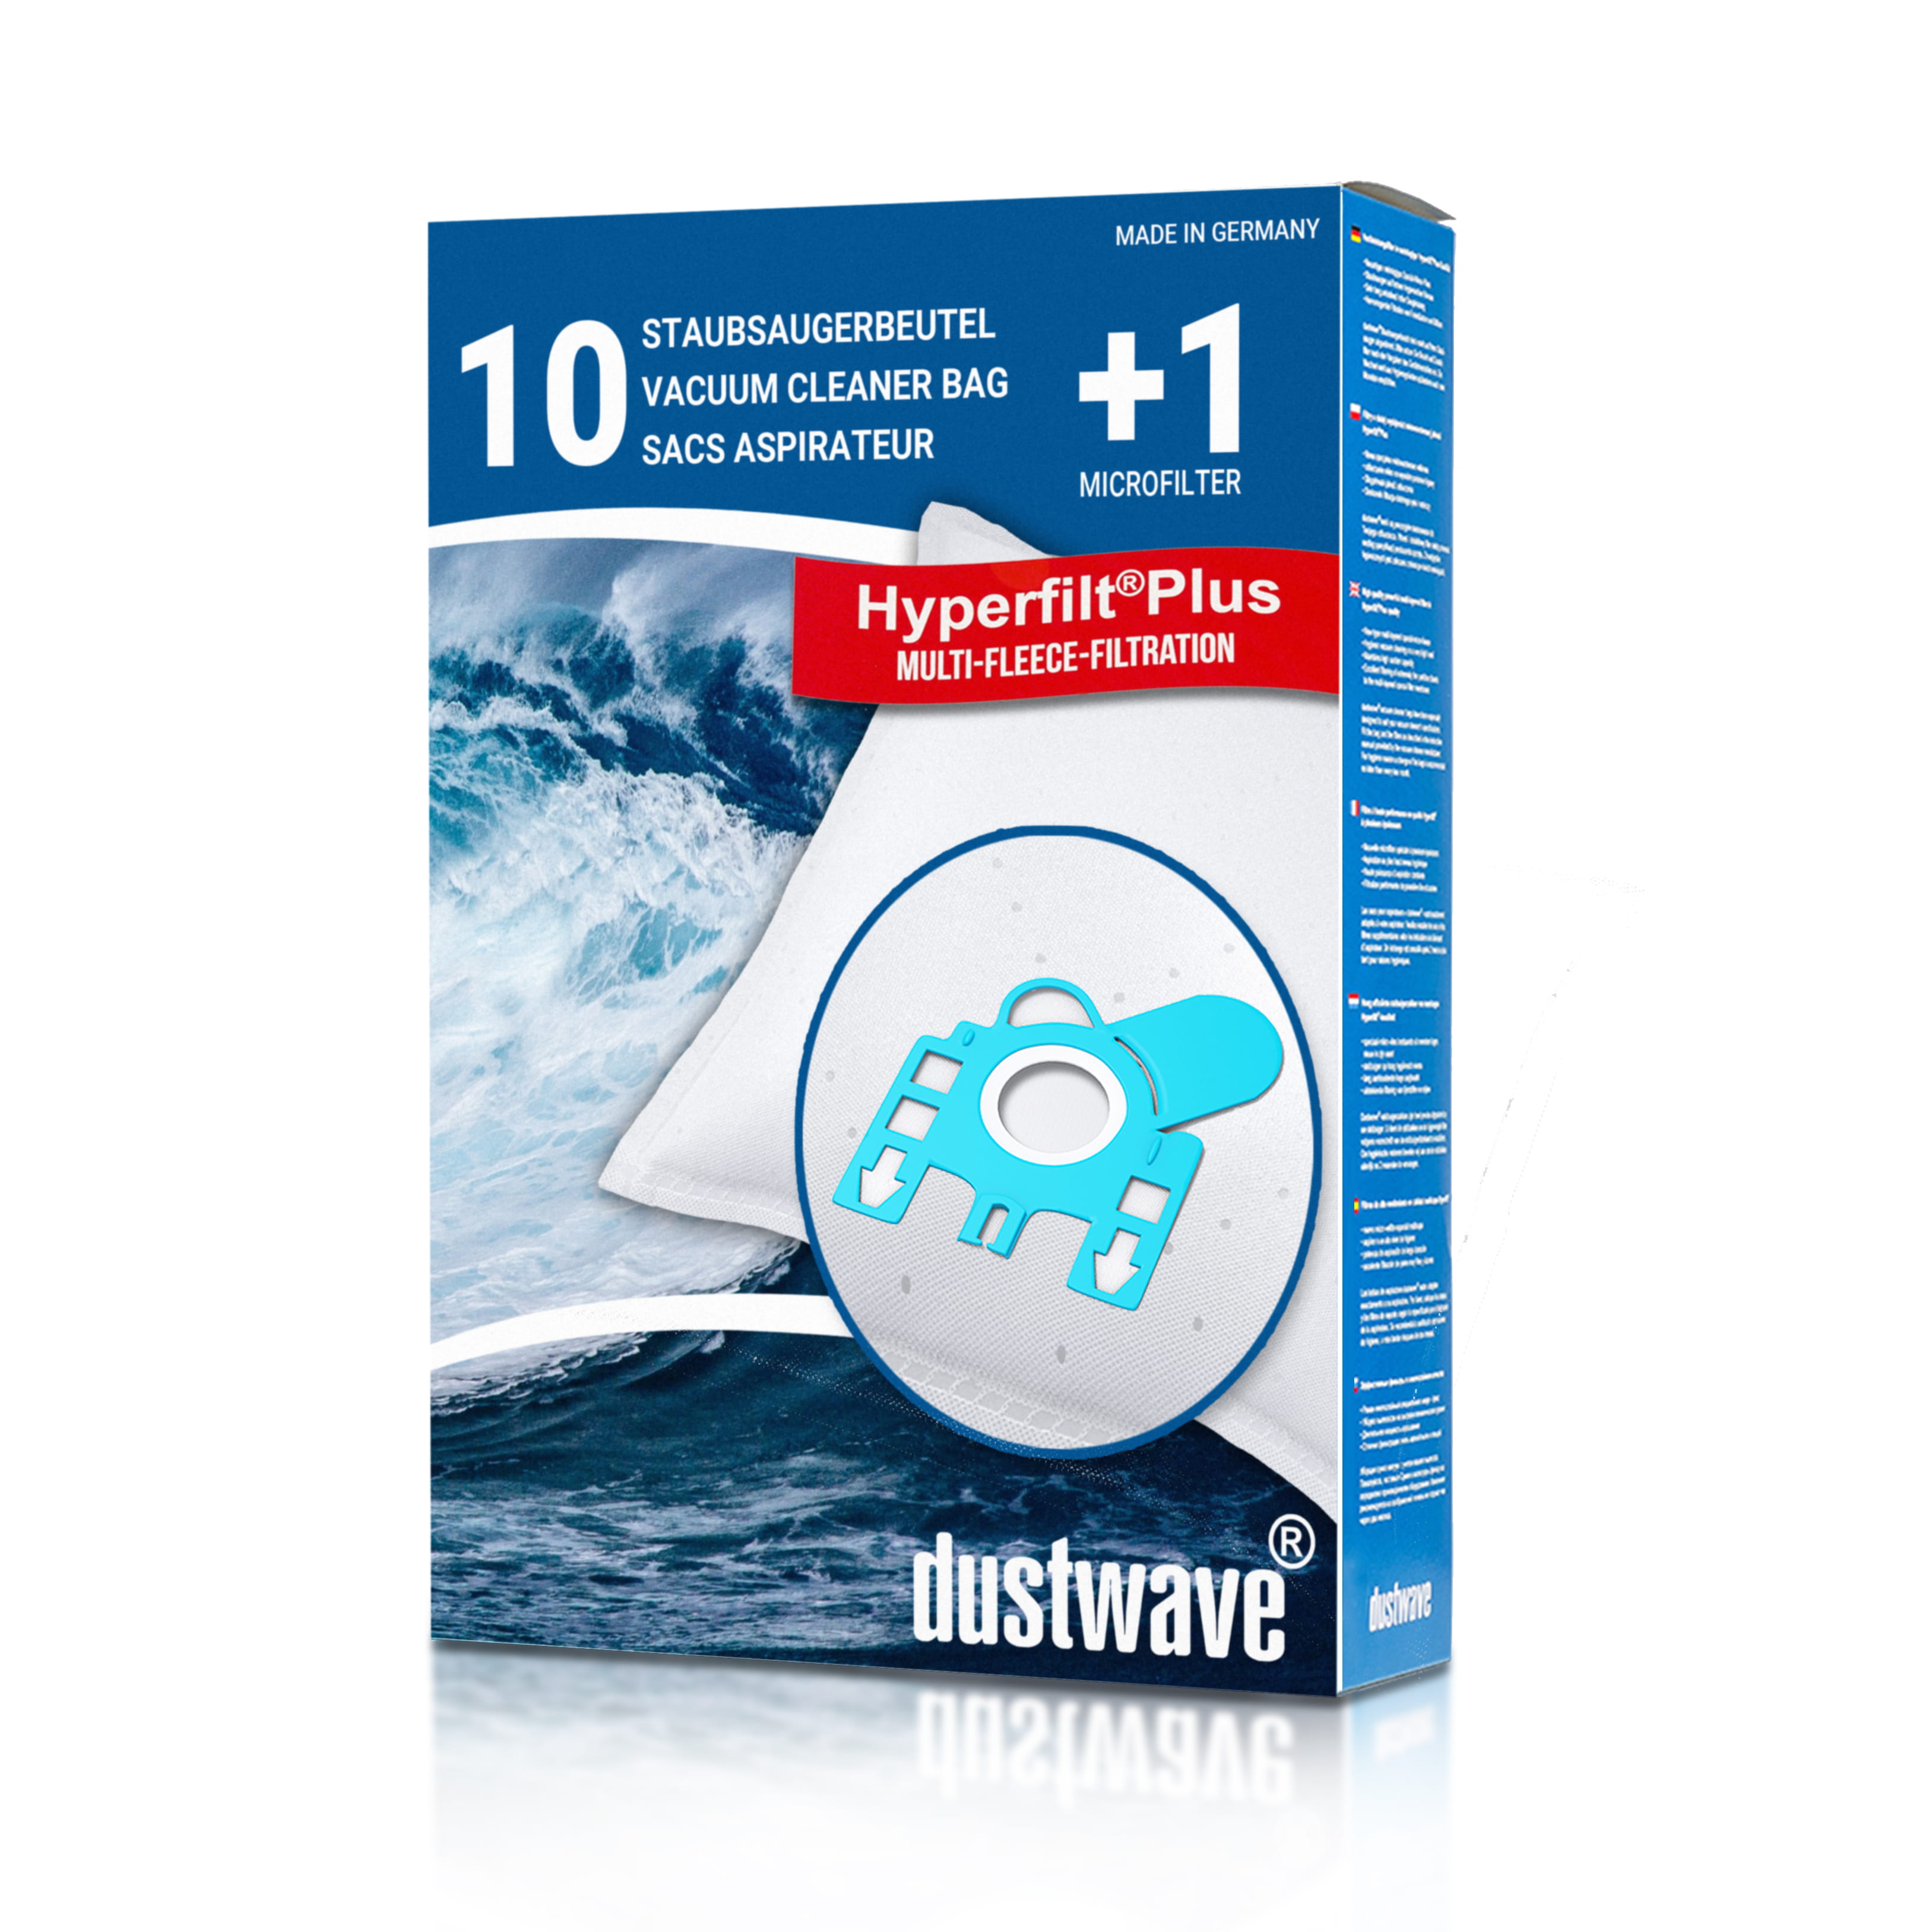 Dustwave® 10 Staubsaugerbeutel für Hoover TC2885 / TRTC2885 - hocheffizient, mehrlagiges Mikrovlies mit Hygieneverschluss - Made in Germany